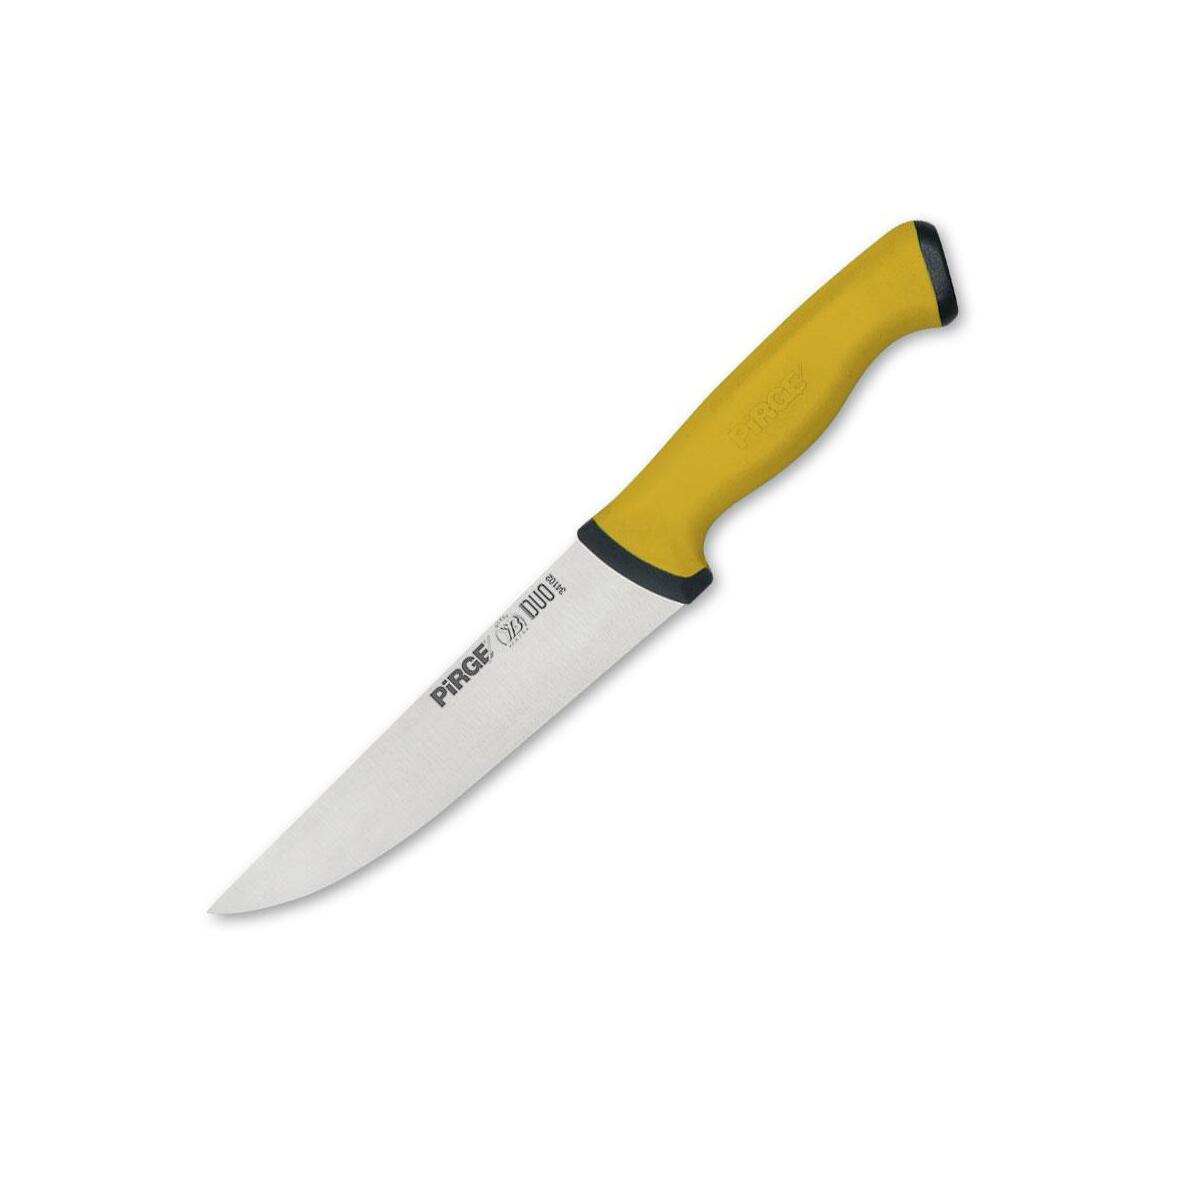 Pirge Ekmek Bıçağı Duo 34024 17Cm Sarı